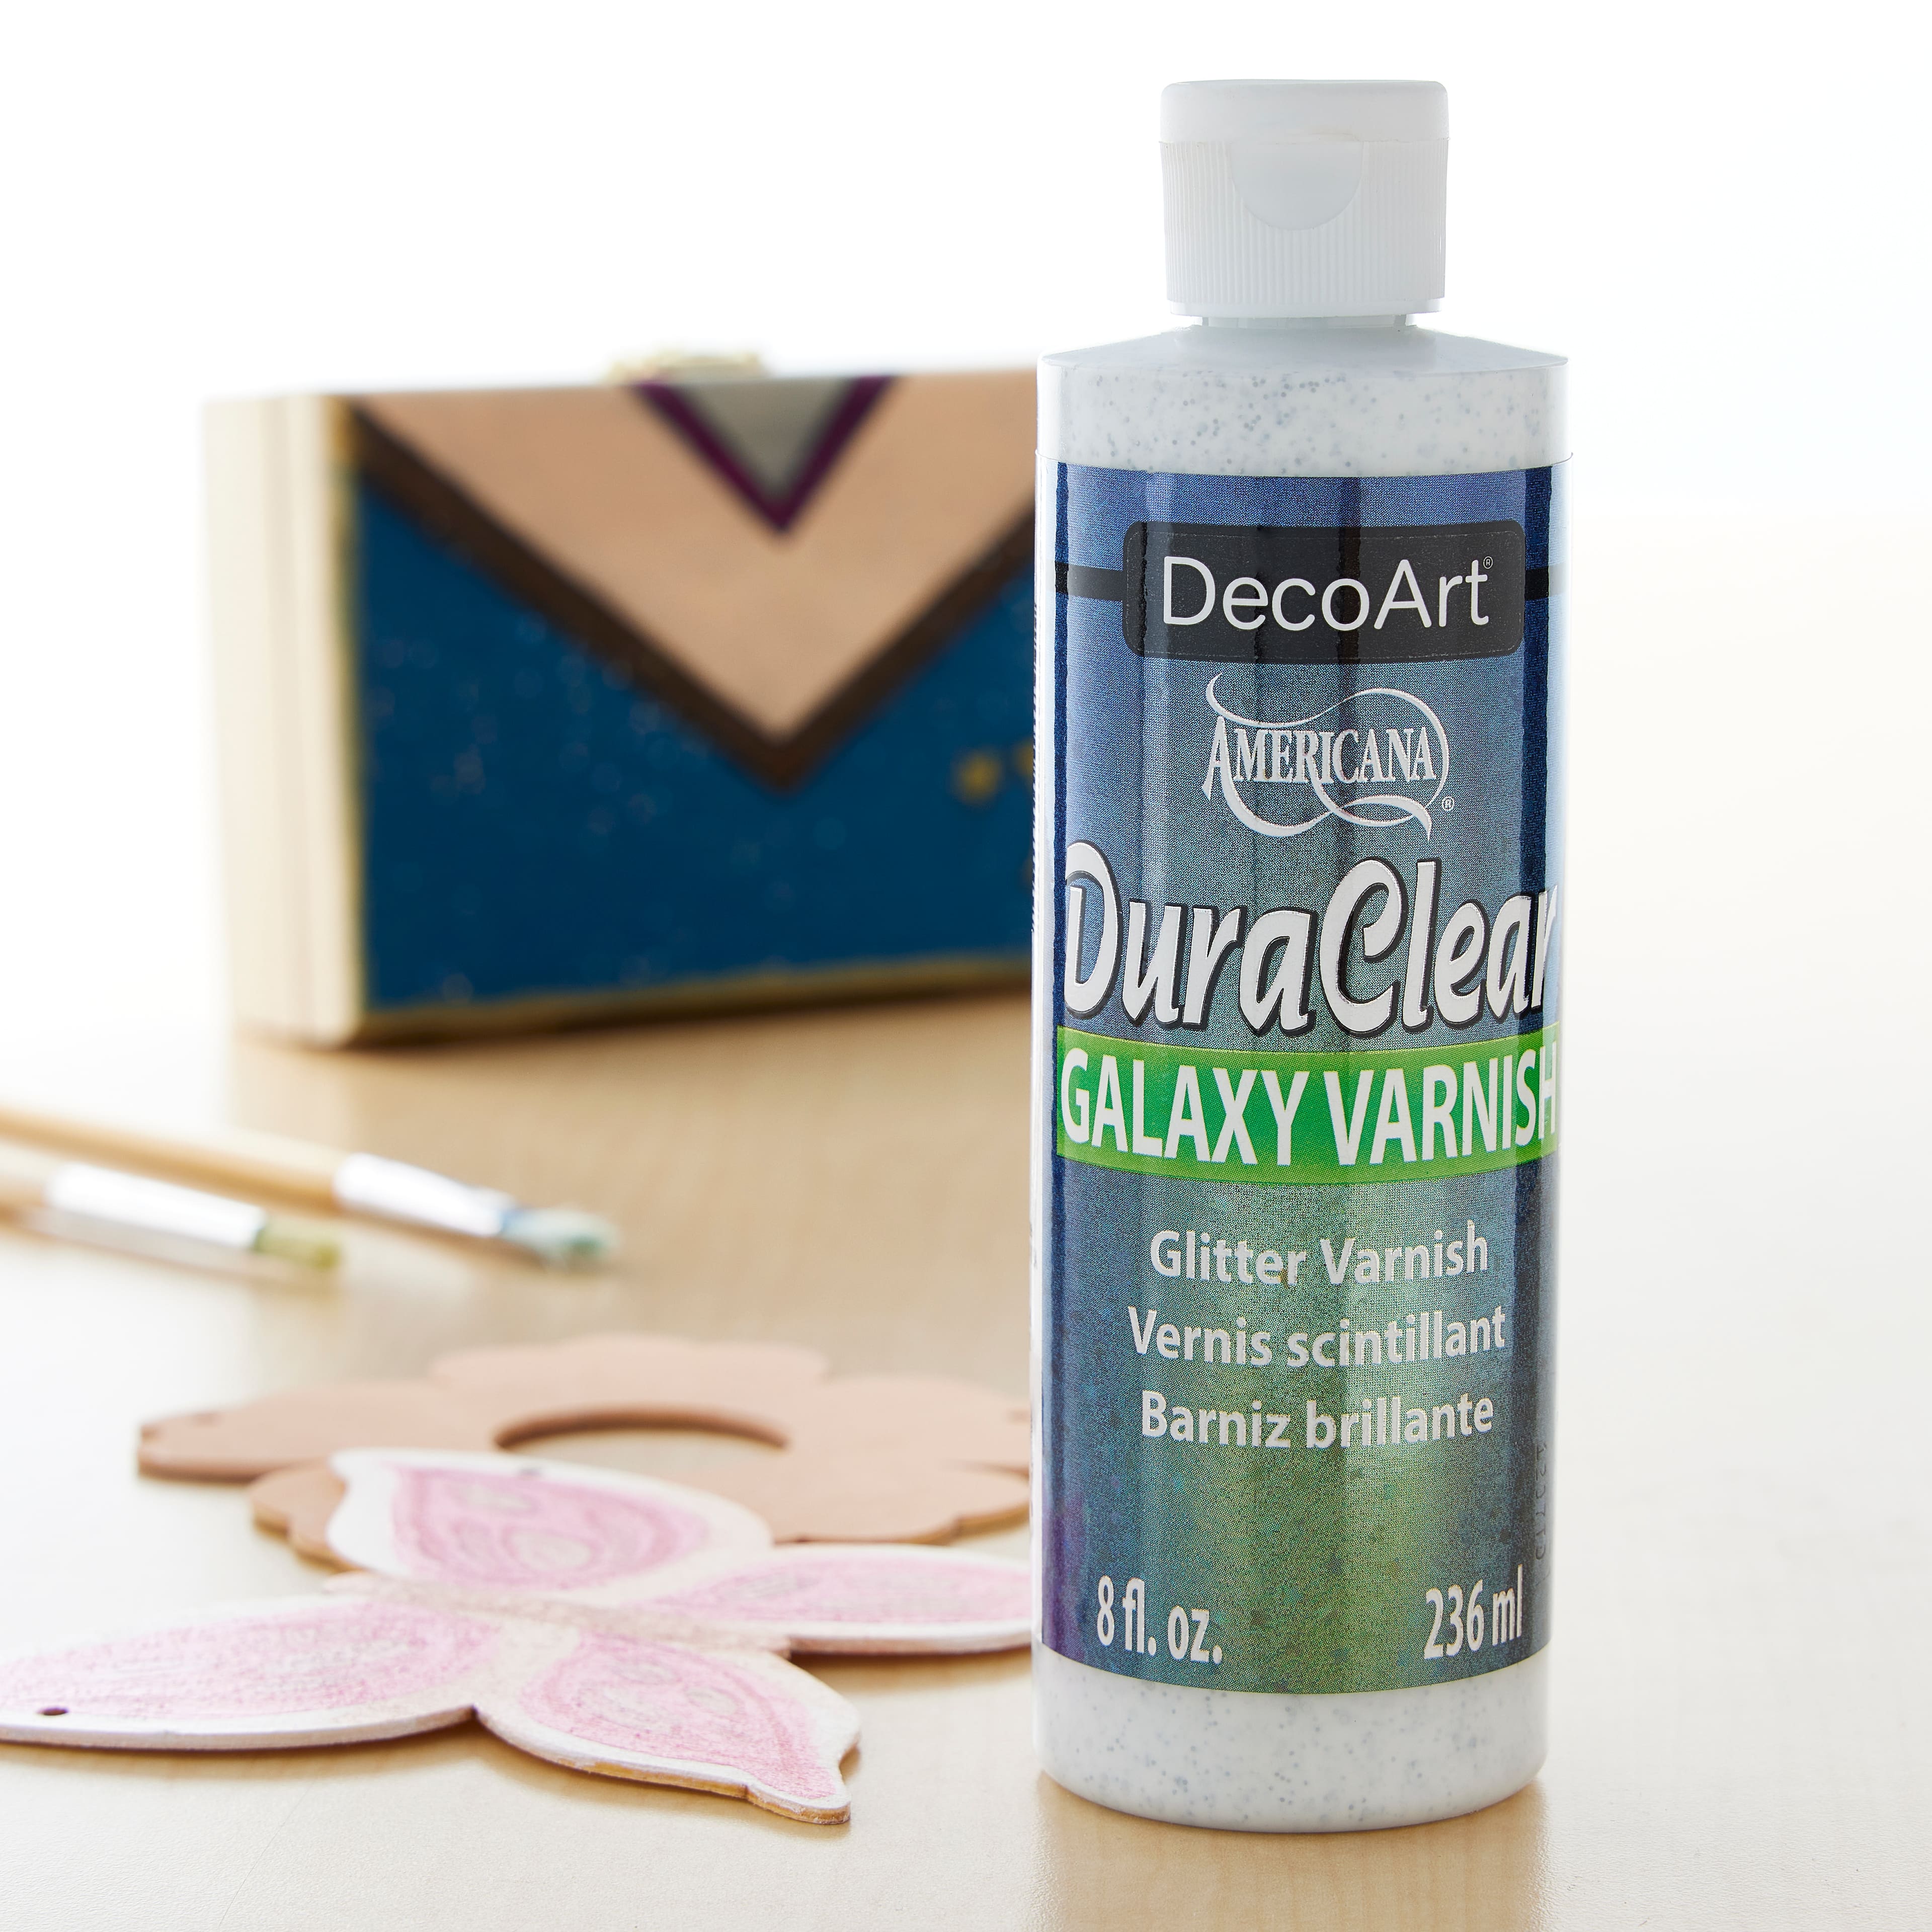 Art Product Reviews - DuraClear Galaxy Varnish 